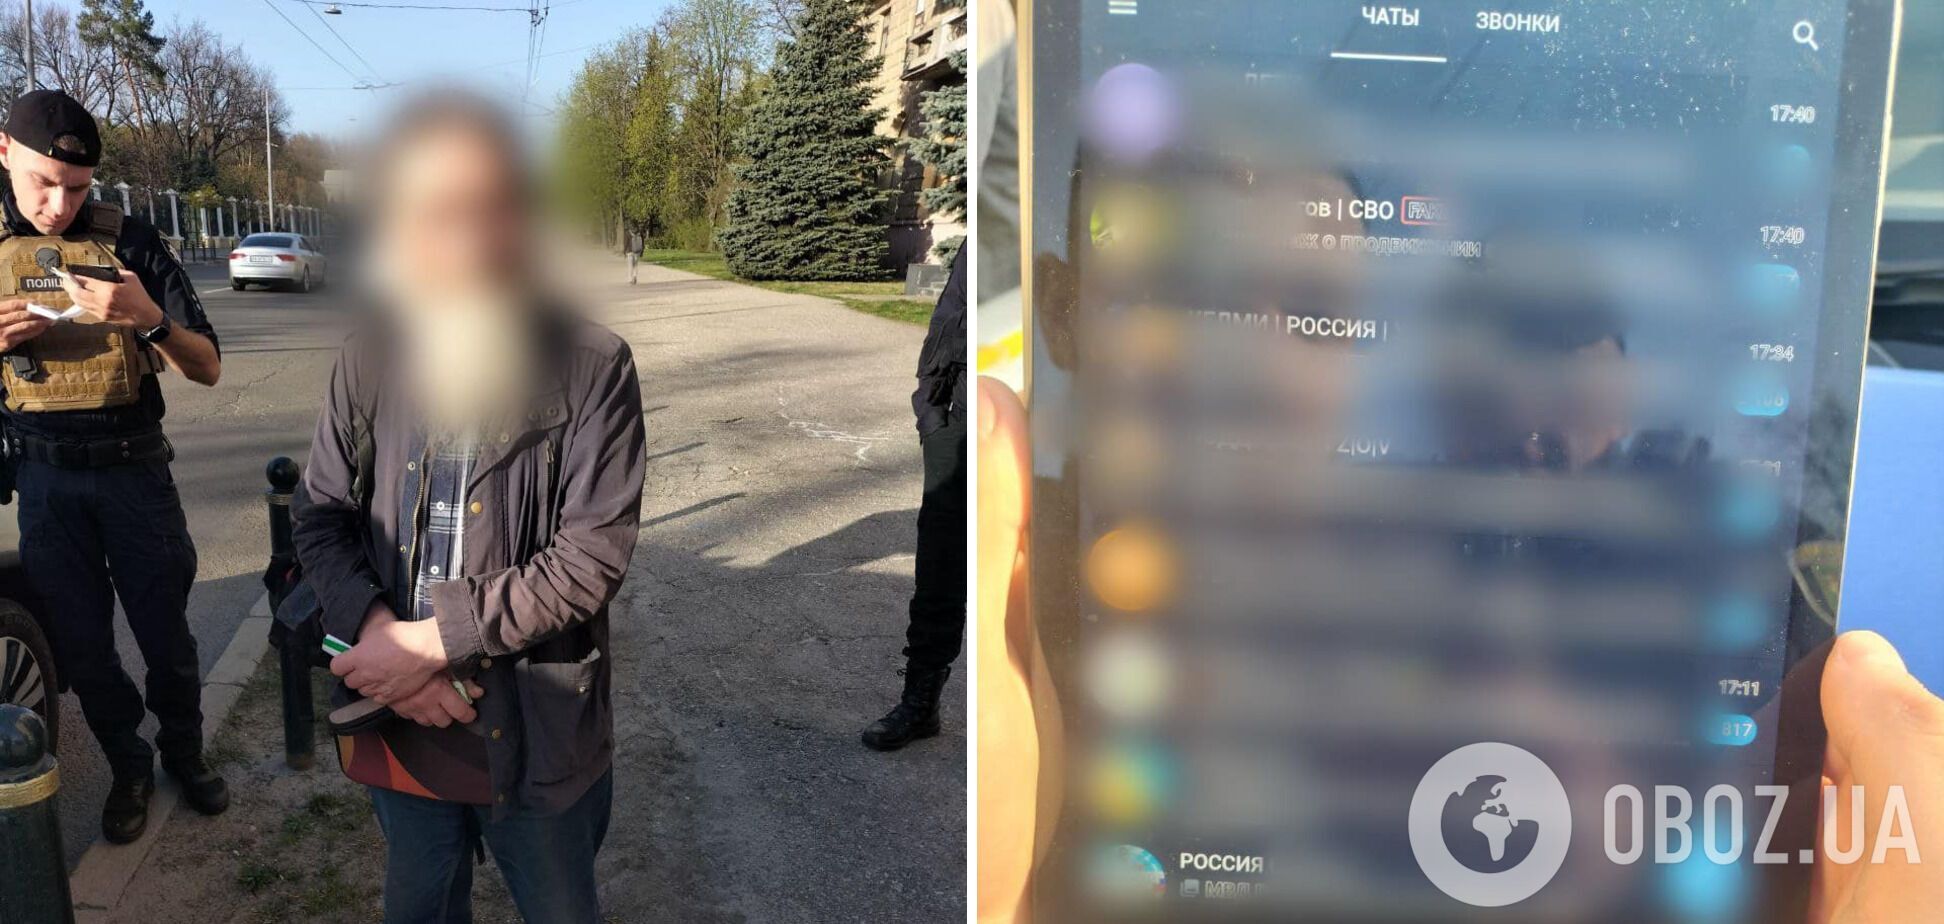 'У него был планшет с интересными заметками': в Харькове задержали мужчину, который ждал Россию. Фото